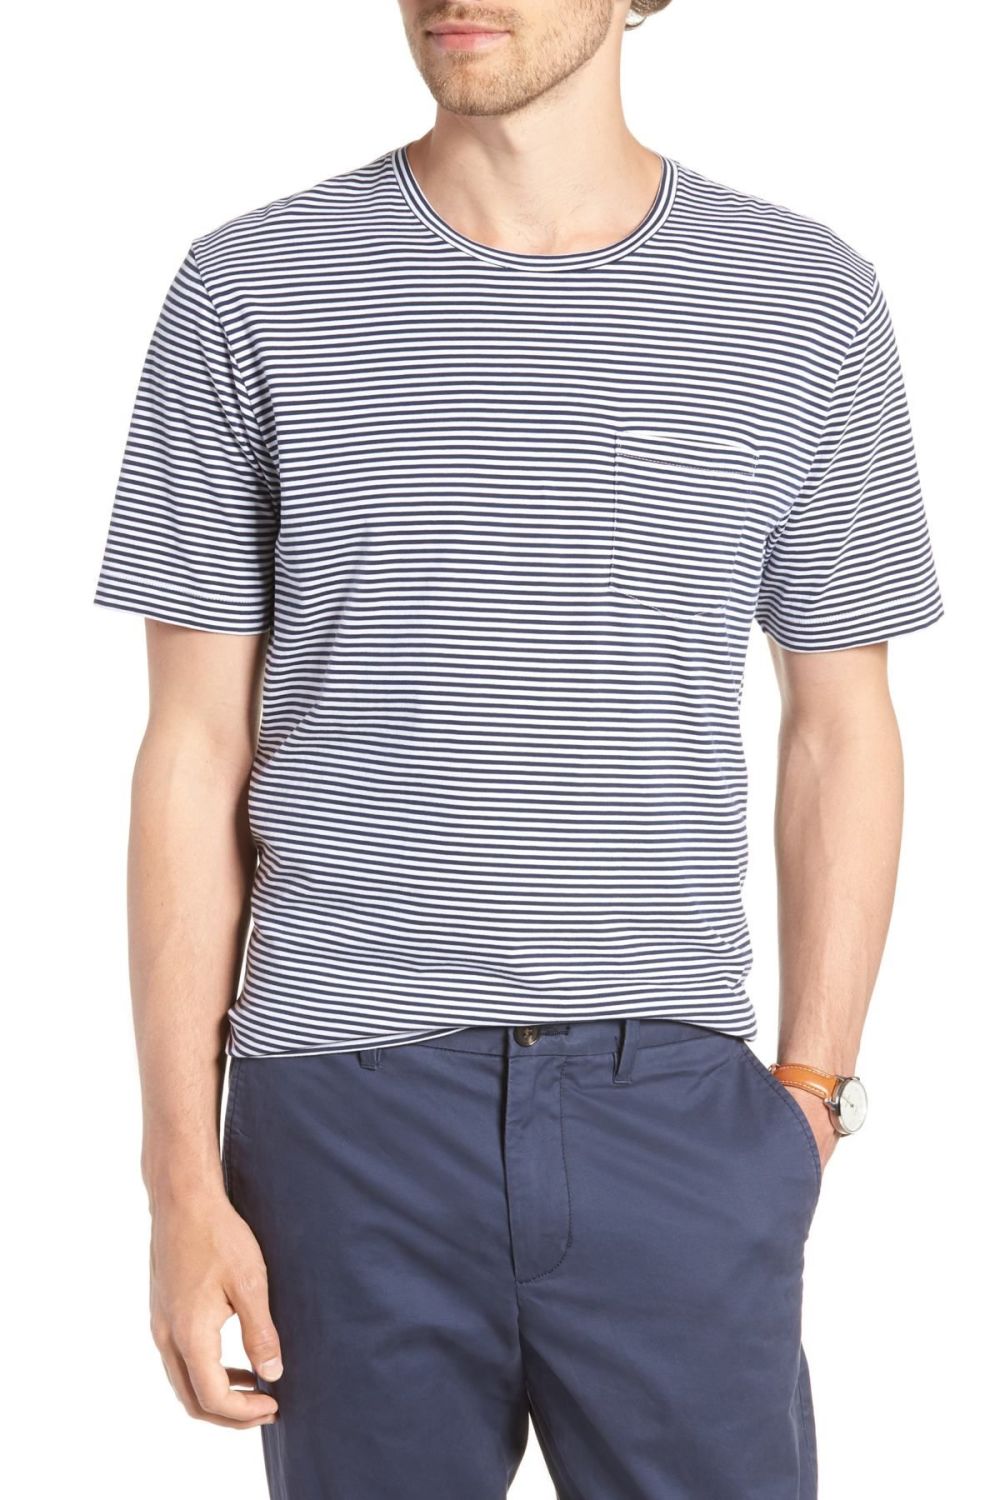 Navy Iris Mini Stripe T-Shirt|Size: 1XBIG 